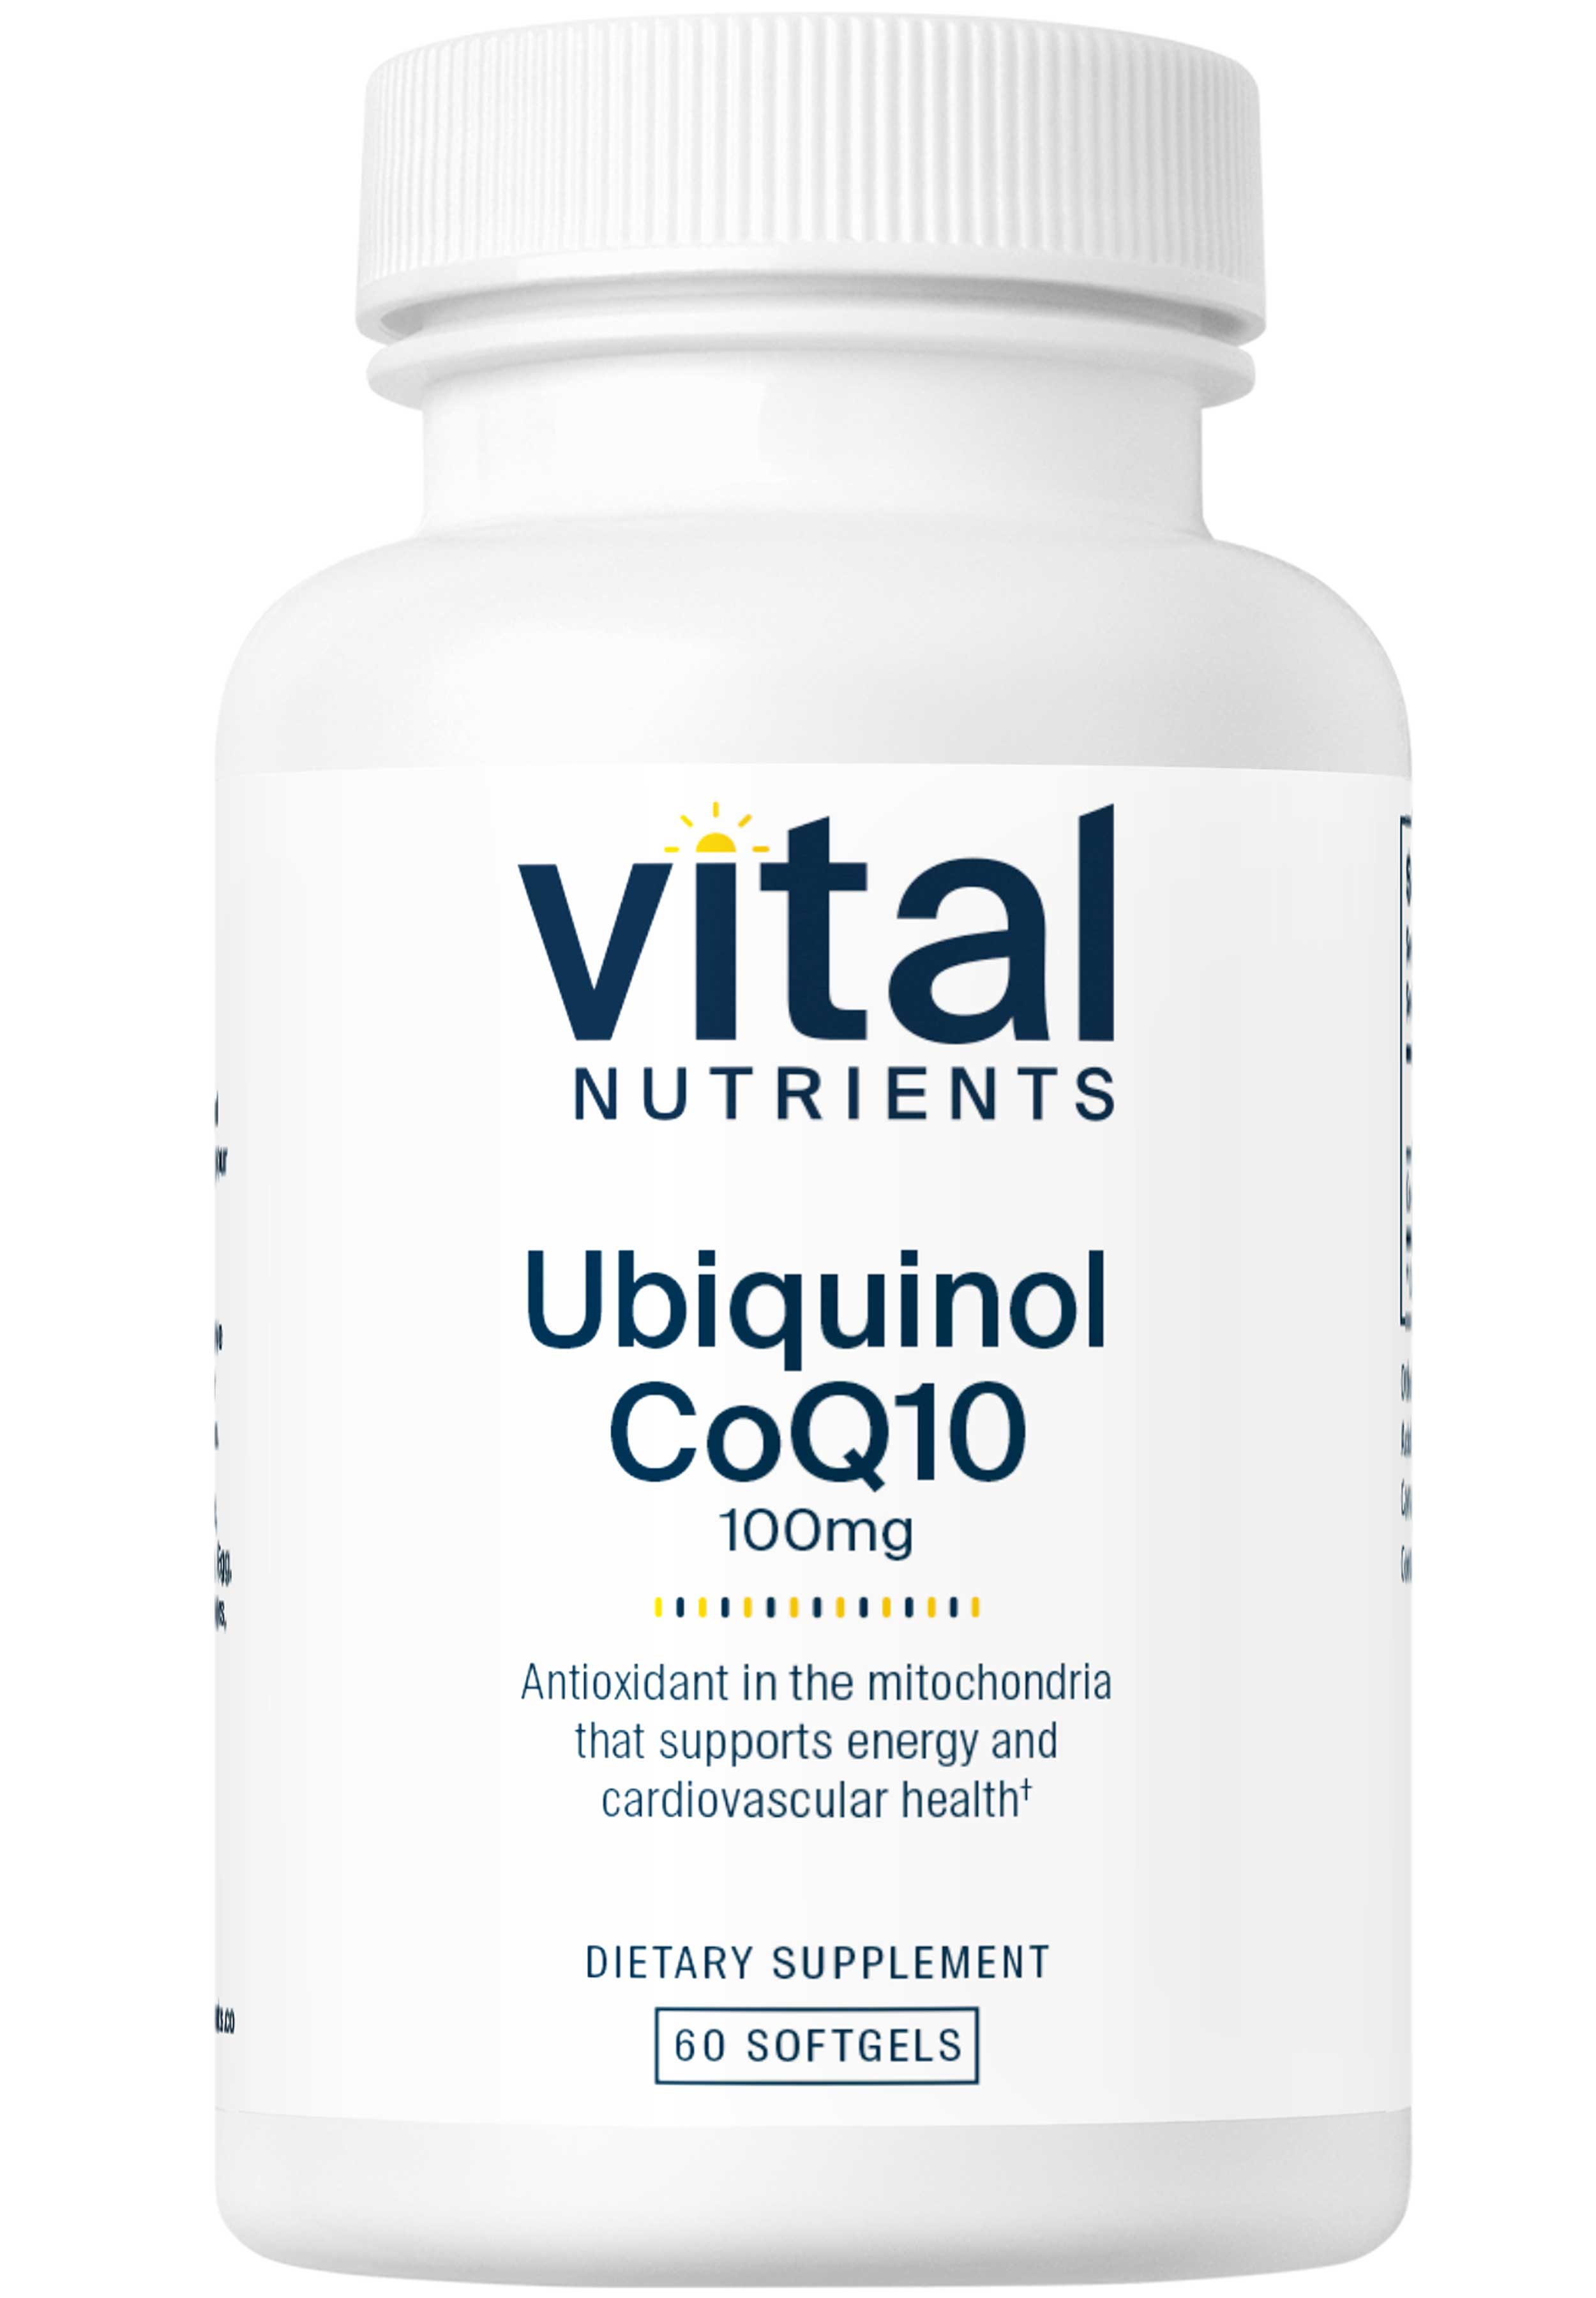 Vital Nutrients Ubiquinol CoQ10 100mg